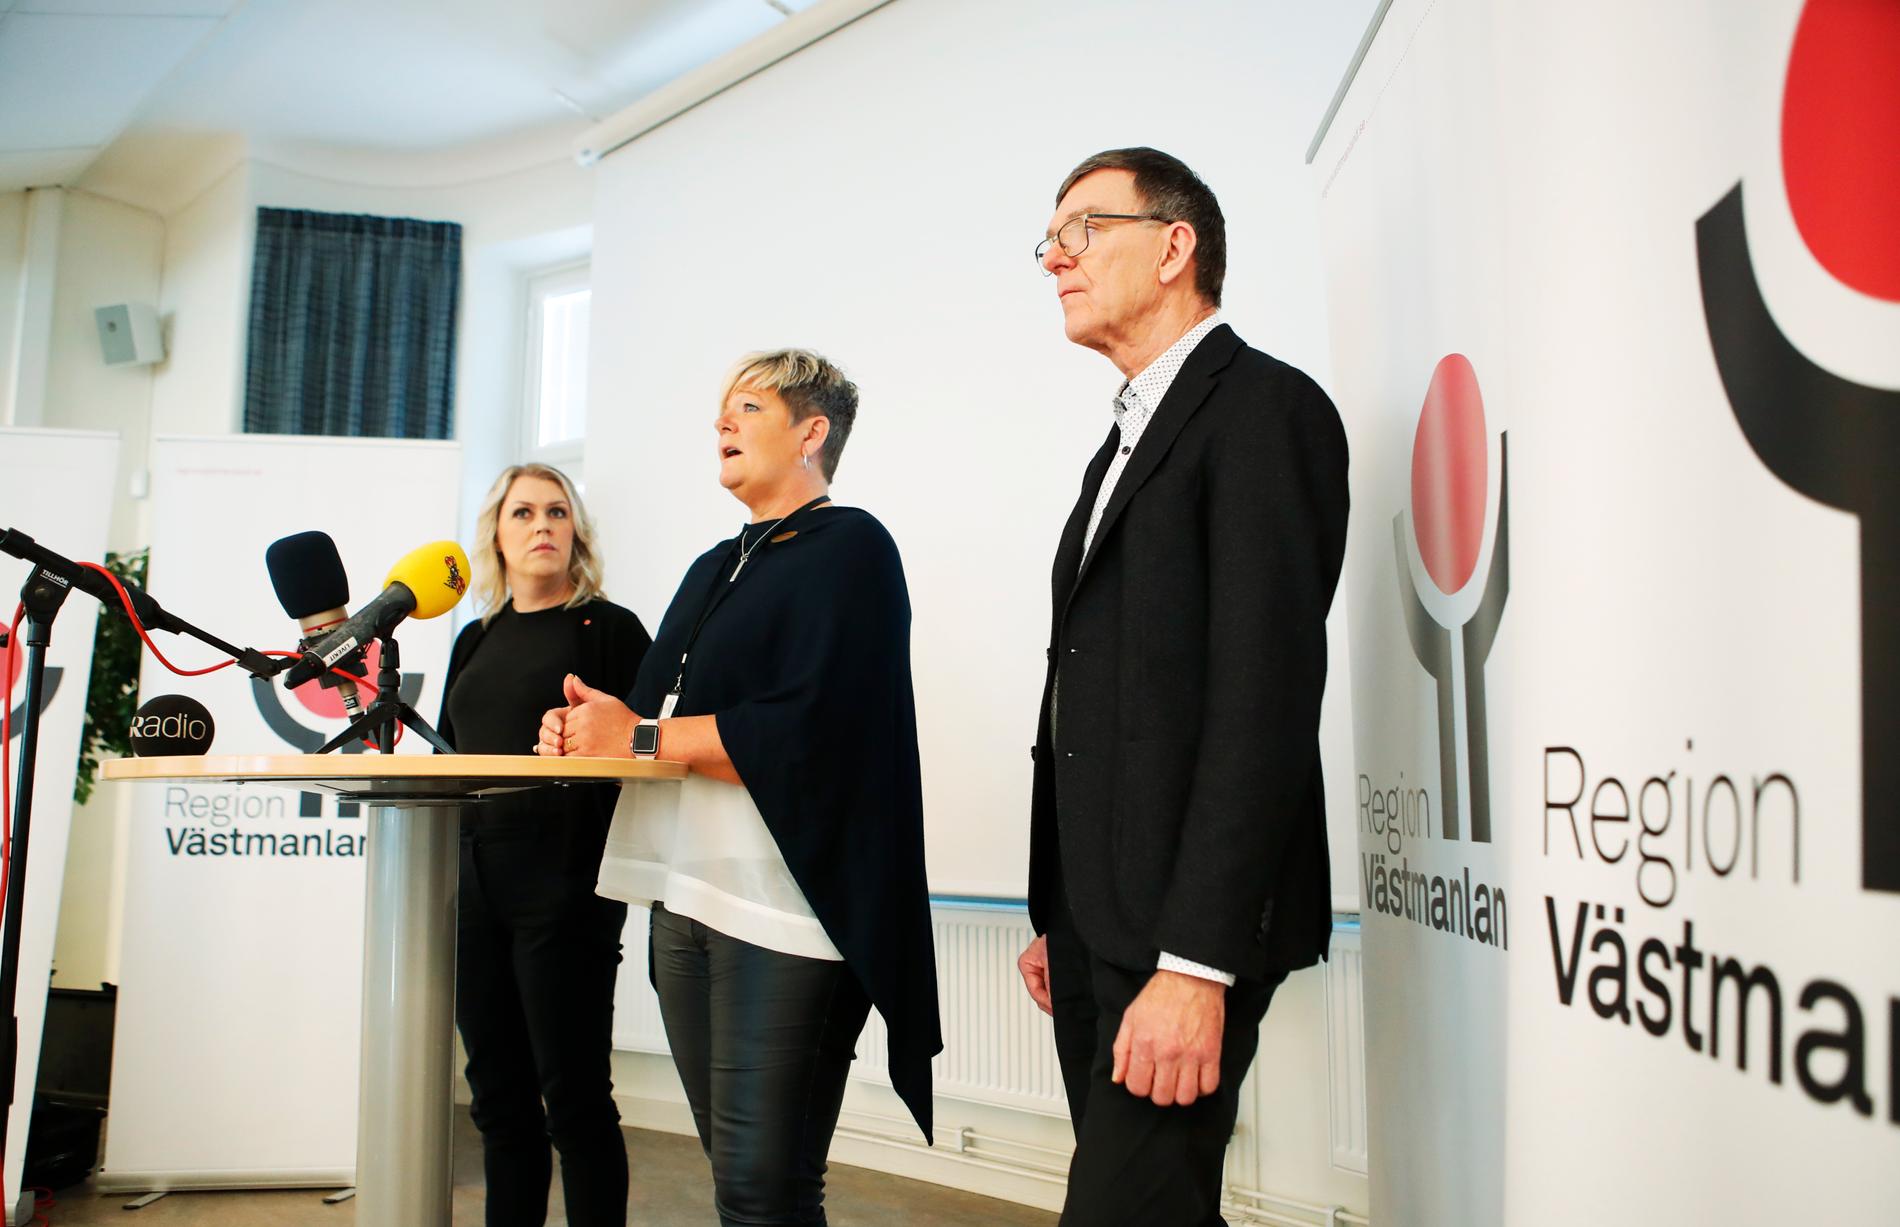 Jan Smedjegård (längst till höger) tillsammans med socialminister Lena Hallengren och Region Västmanlands Liselott Sjöqvist under en presskonferens i slutet av februari i år.